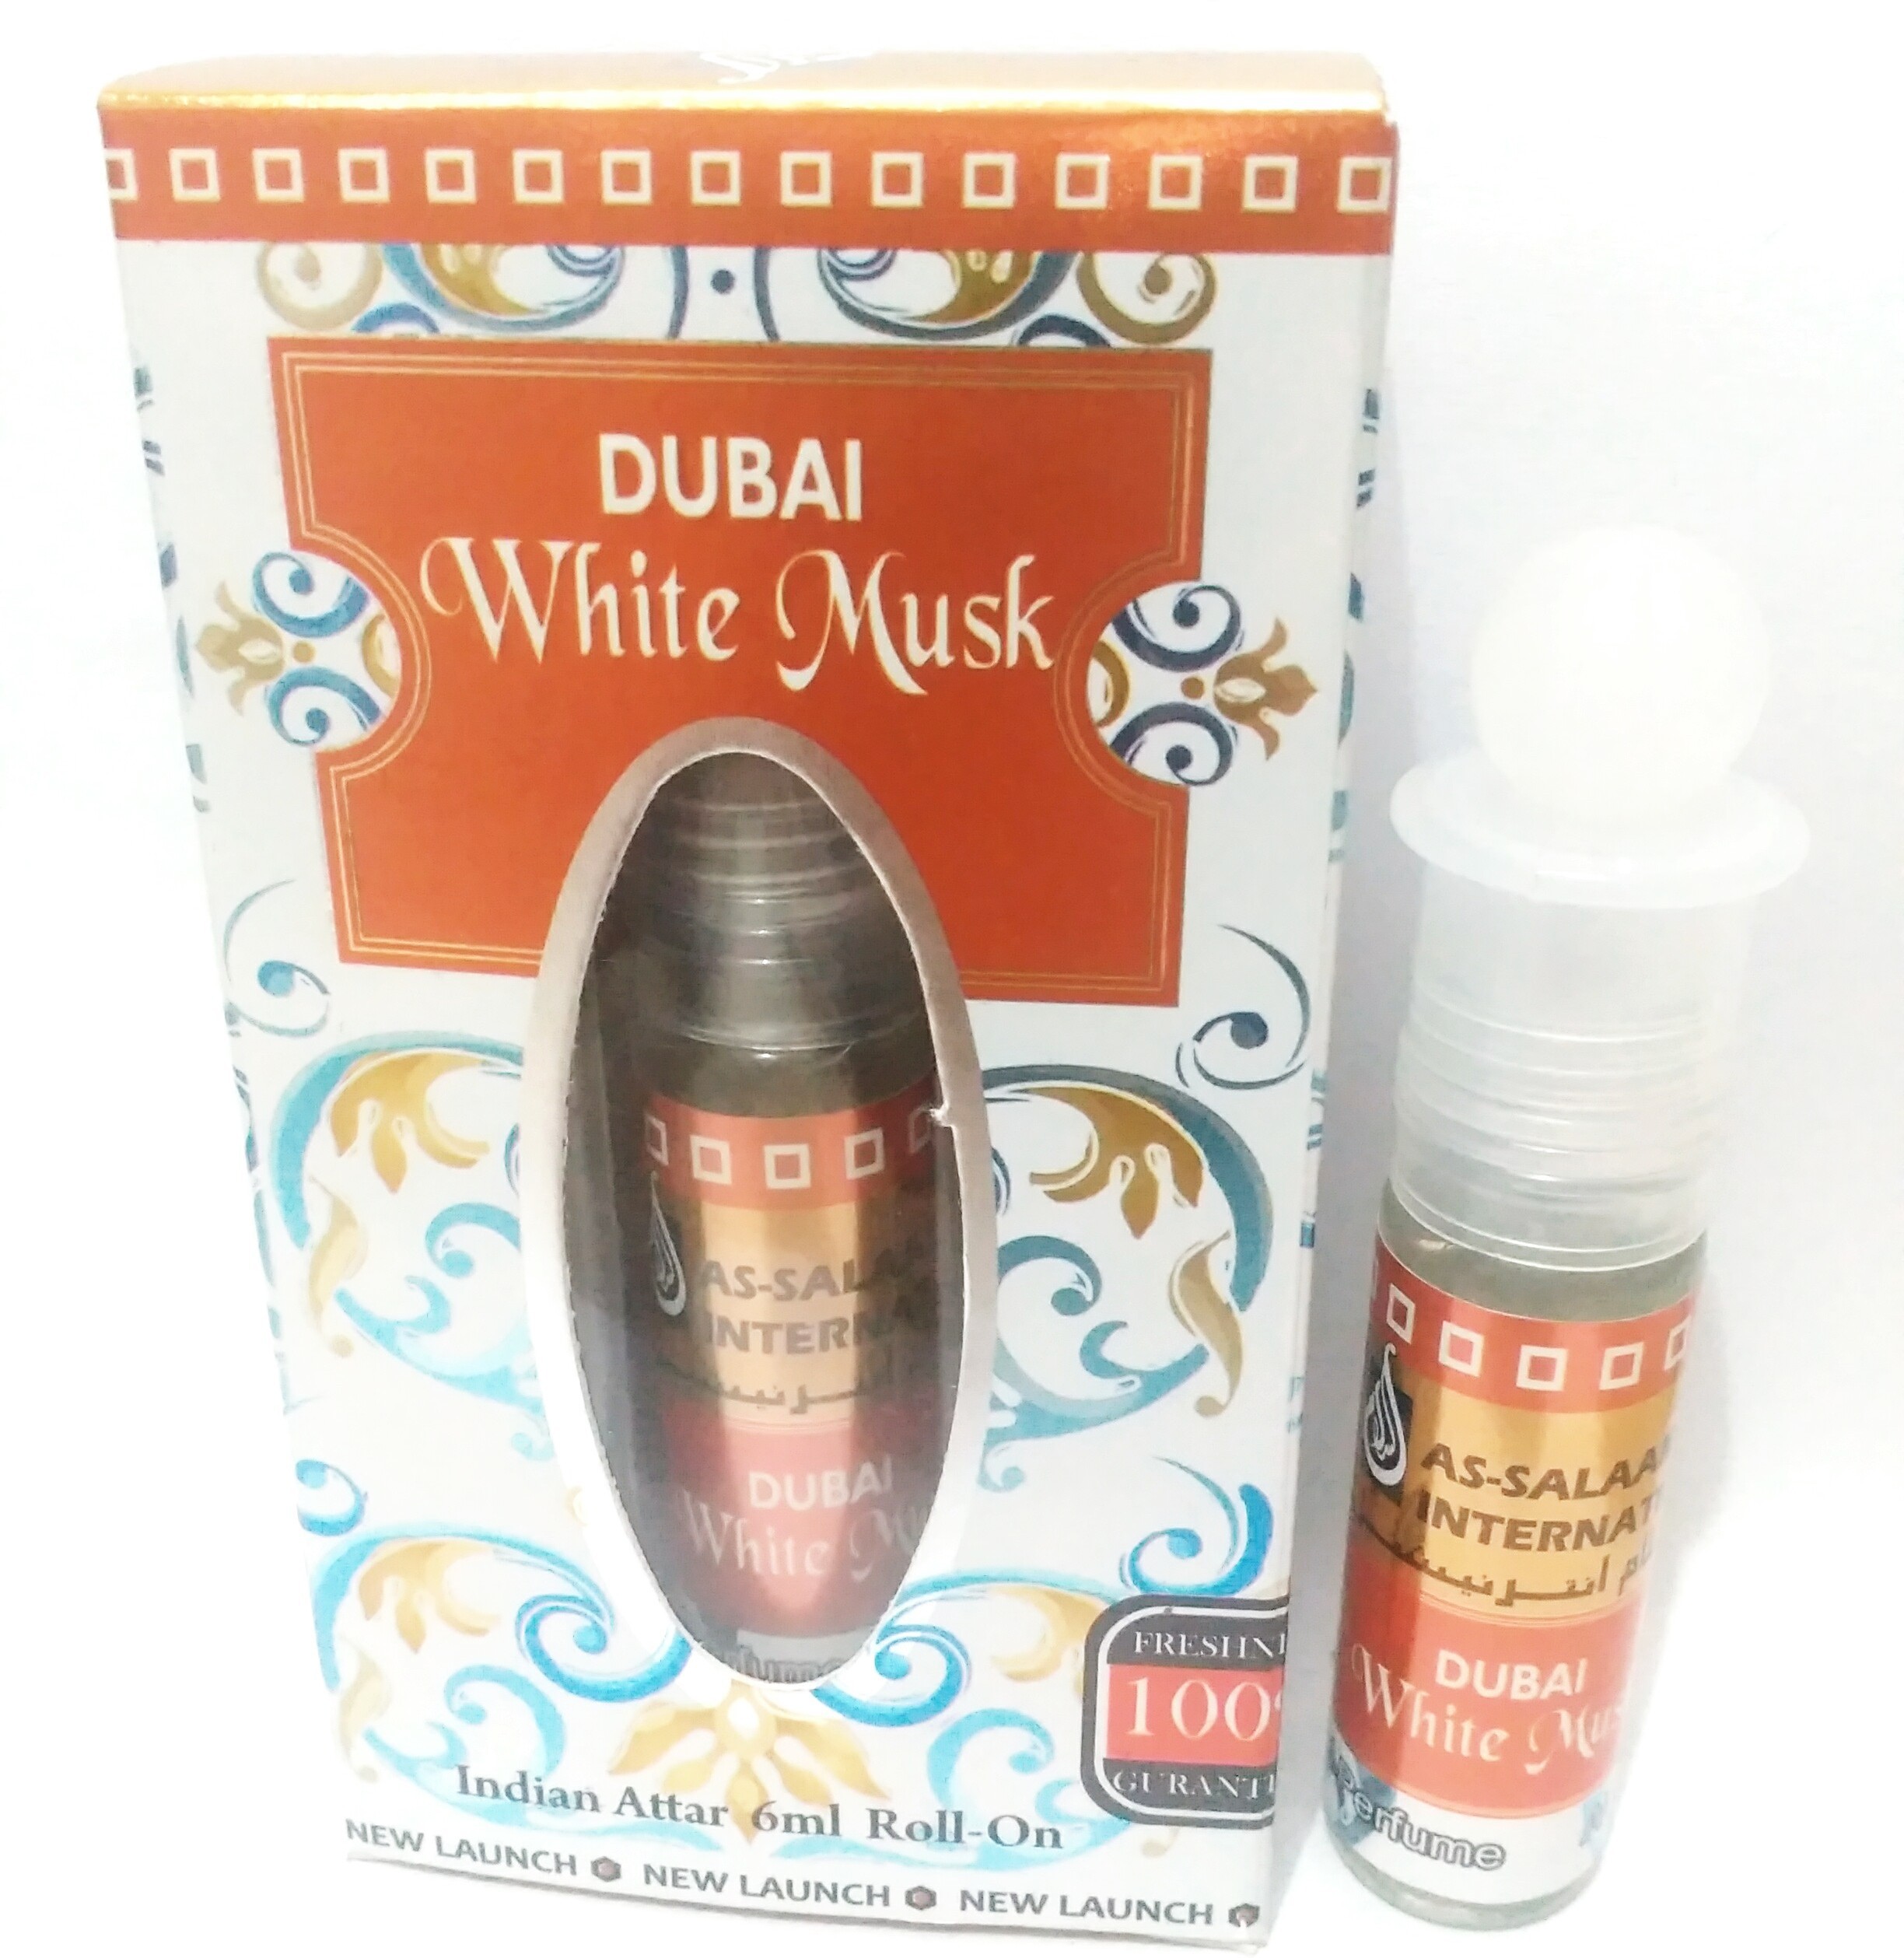 Assalam International Dubai White Musk Floral Attar(Musk)